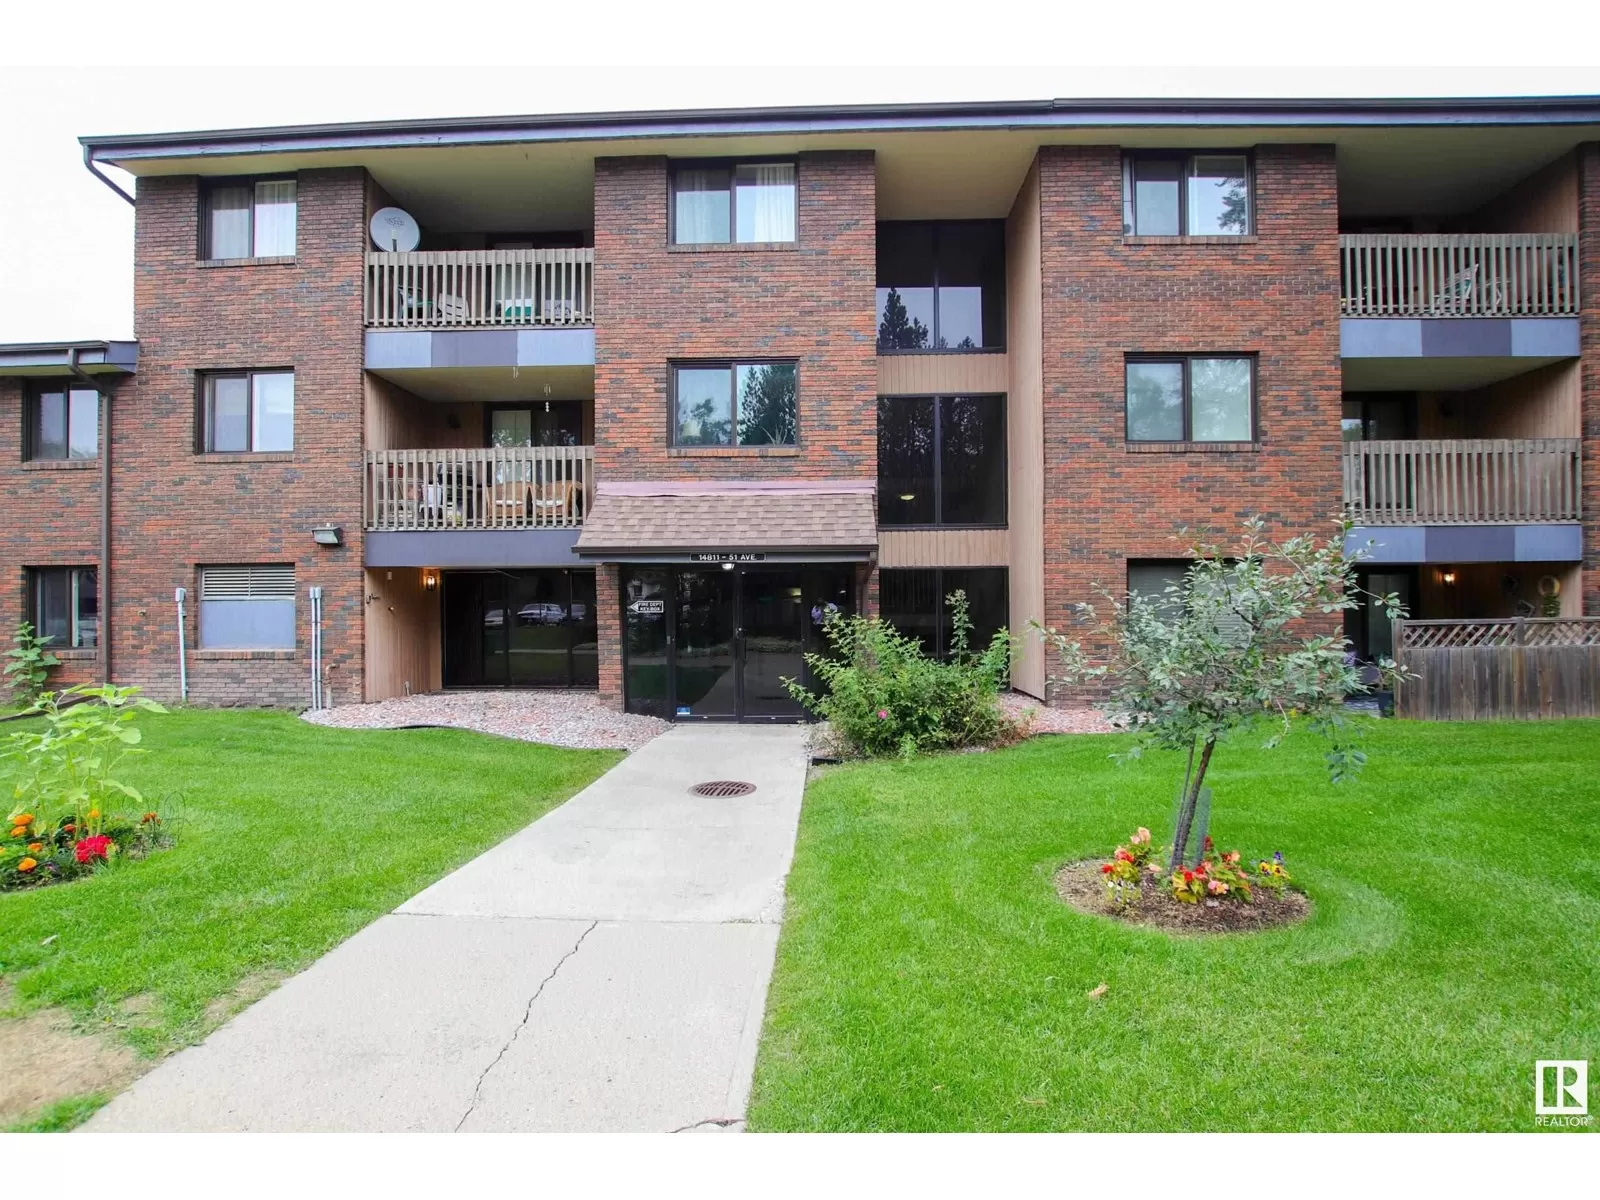 Apartment for rent: #208 14803 51 Av Nw, Edmonton, Alberta T6H 5G4